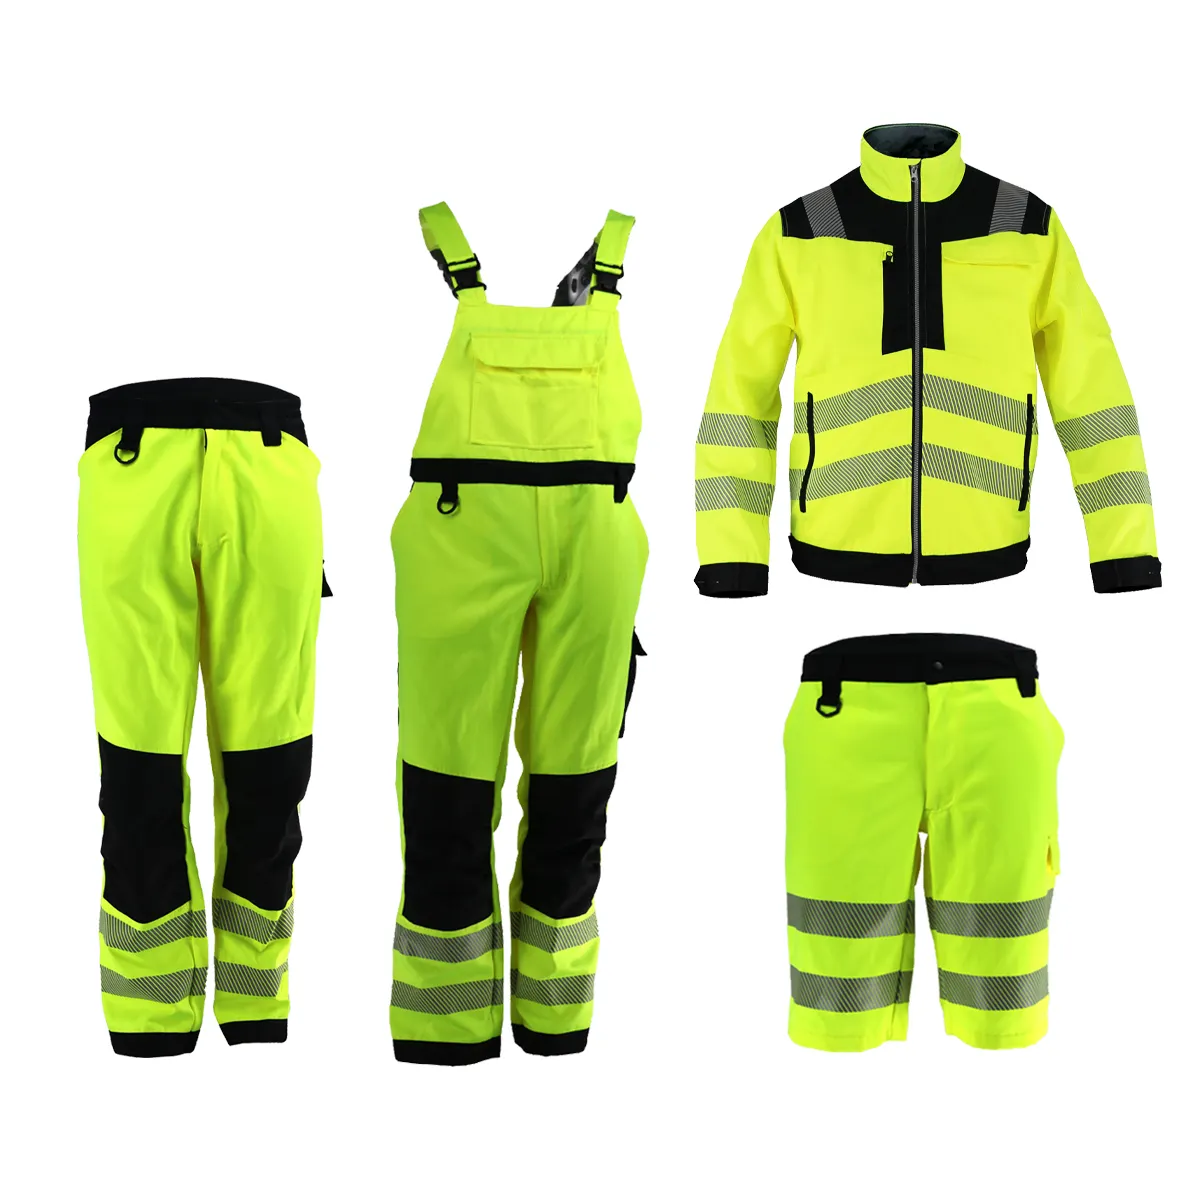 Whosale Hi Vis iş giysisi inşaat yüksek görünürlük yansıtıcı güvenlik iş ceket özel iş ceket